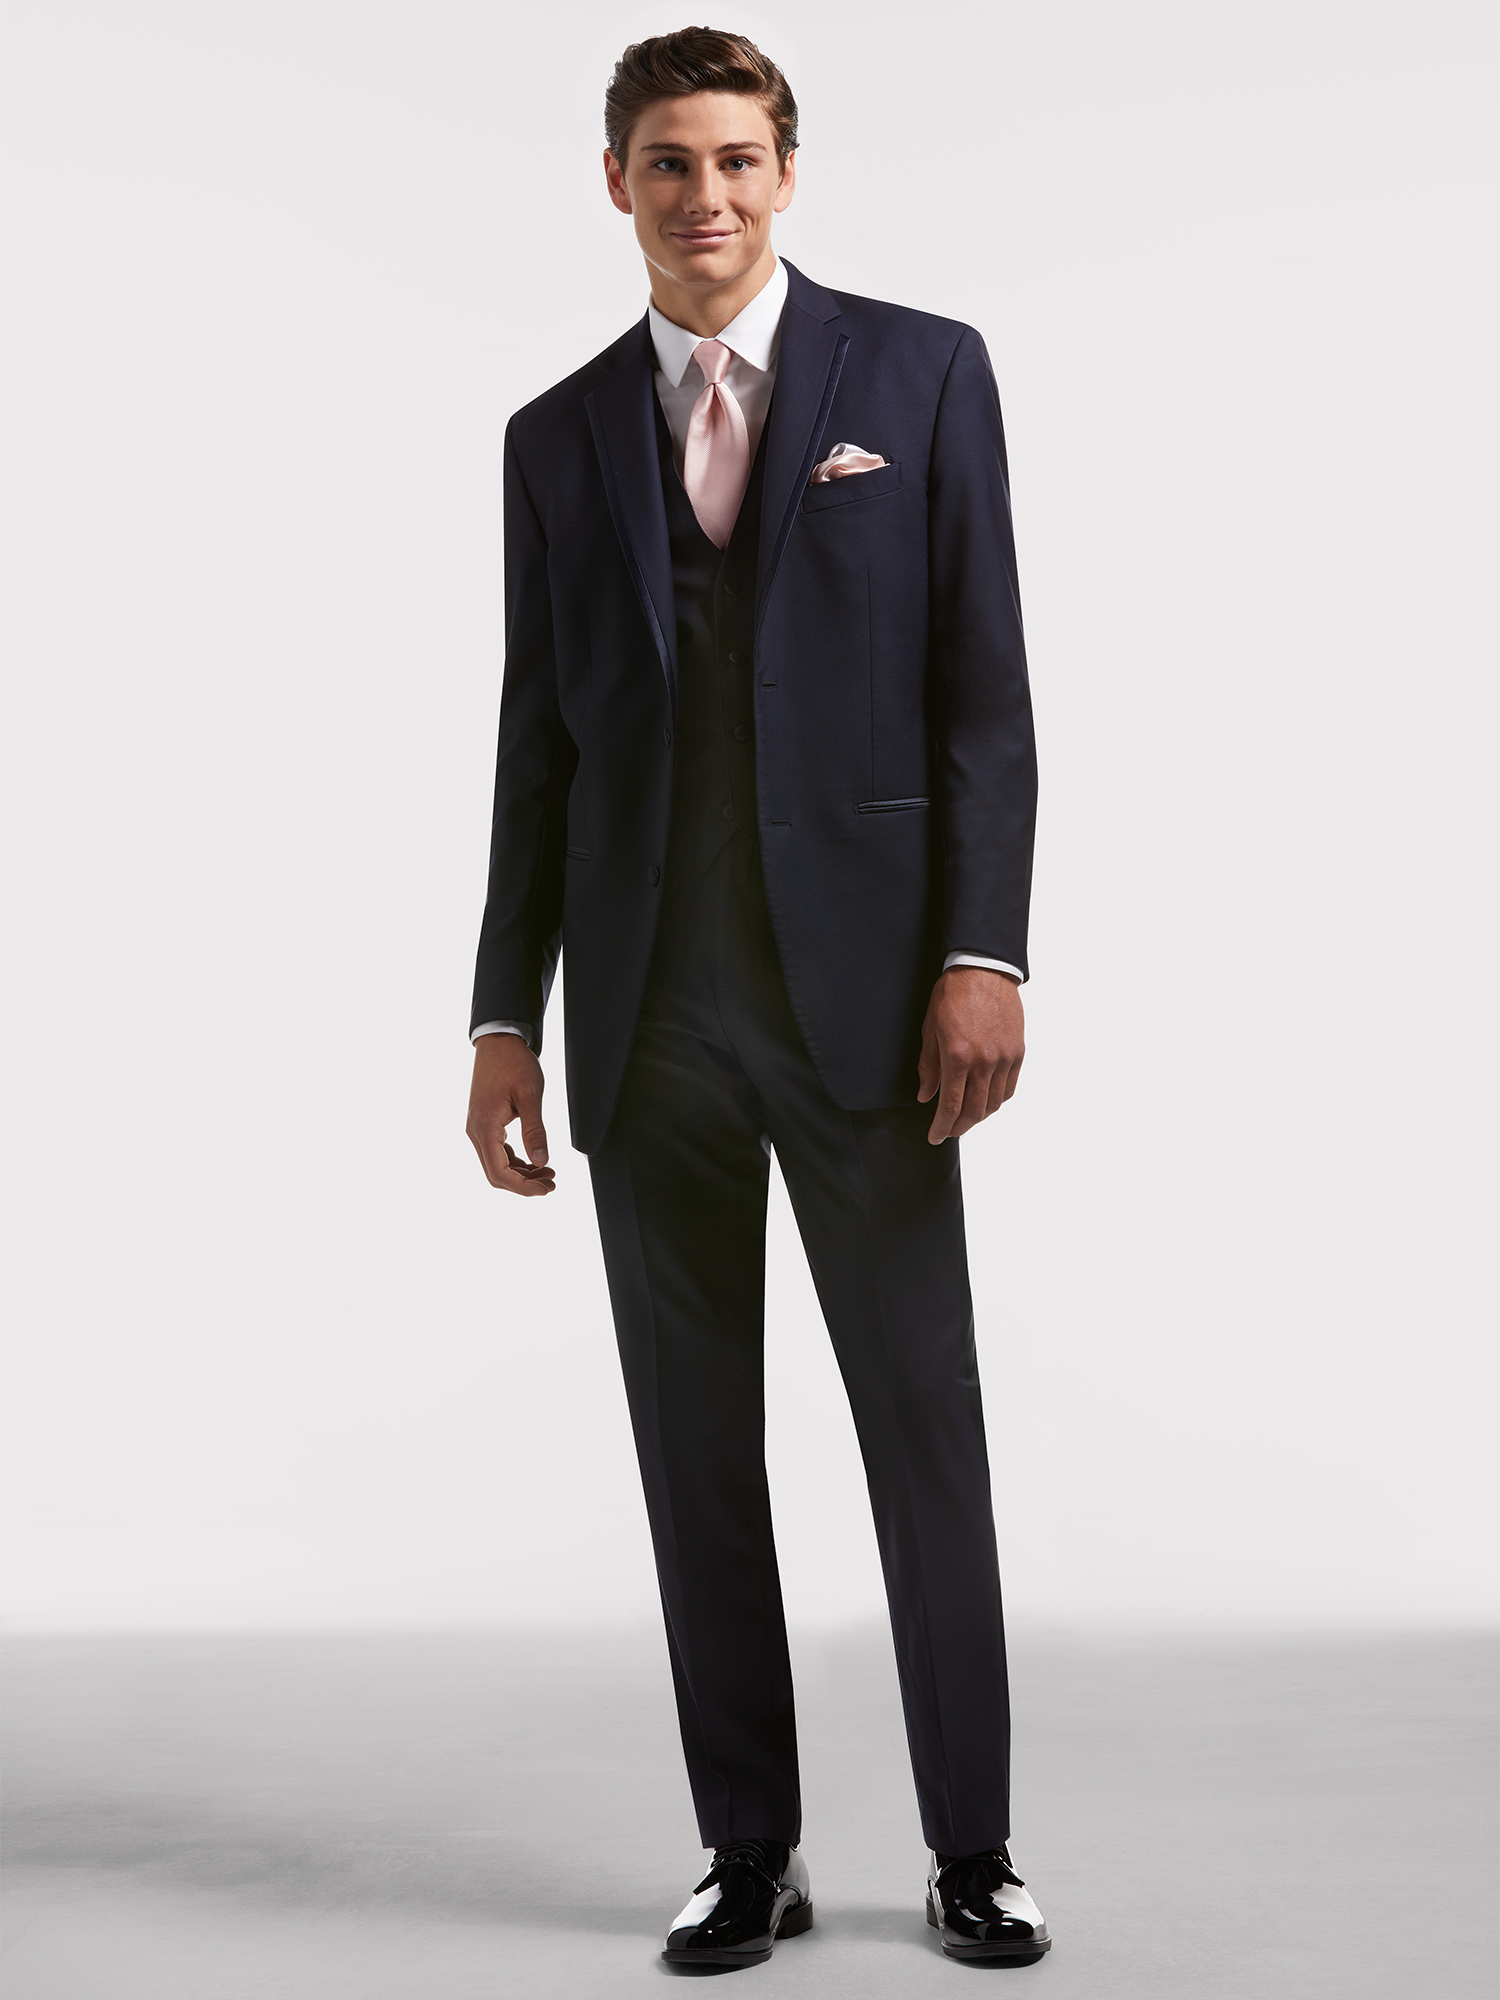 Suitor, Navy Blue Suit Hire, Suit & Tuxedo Rentals